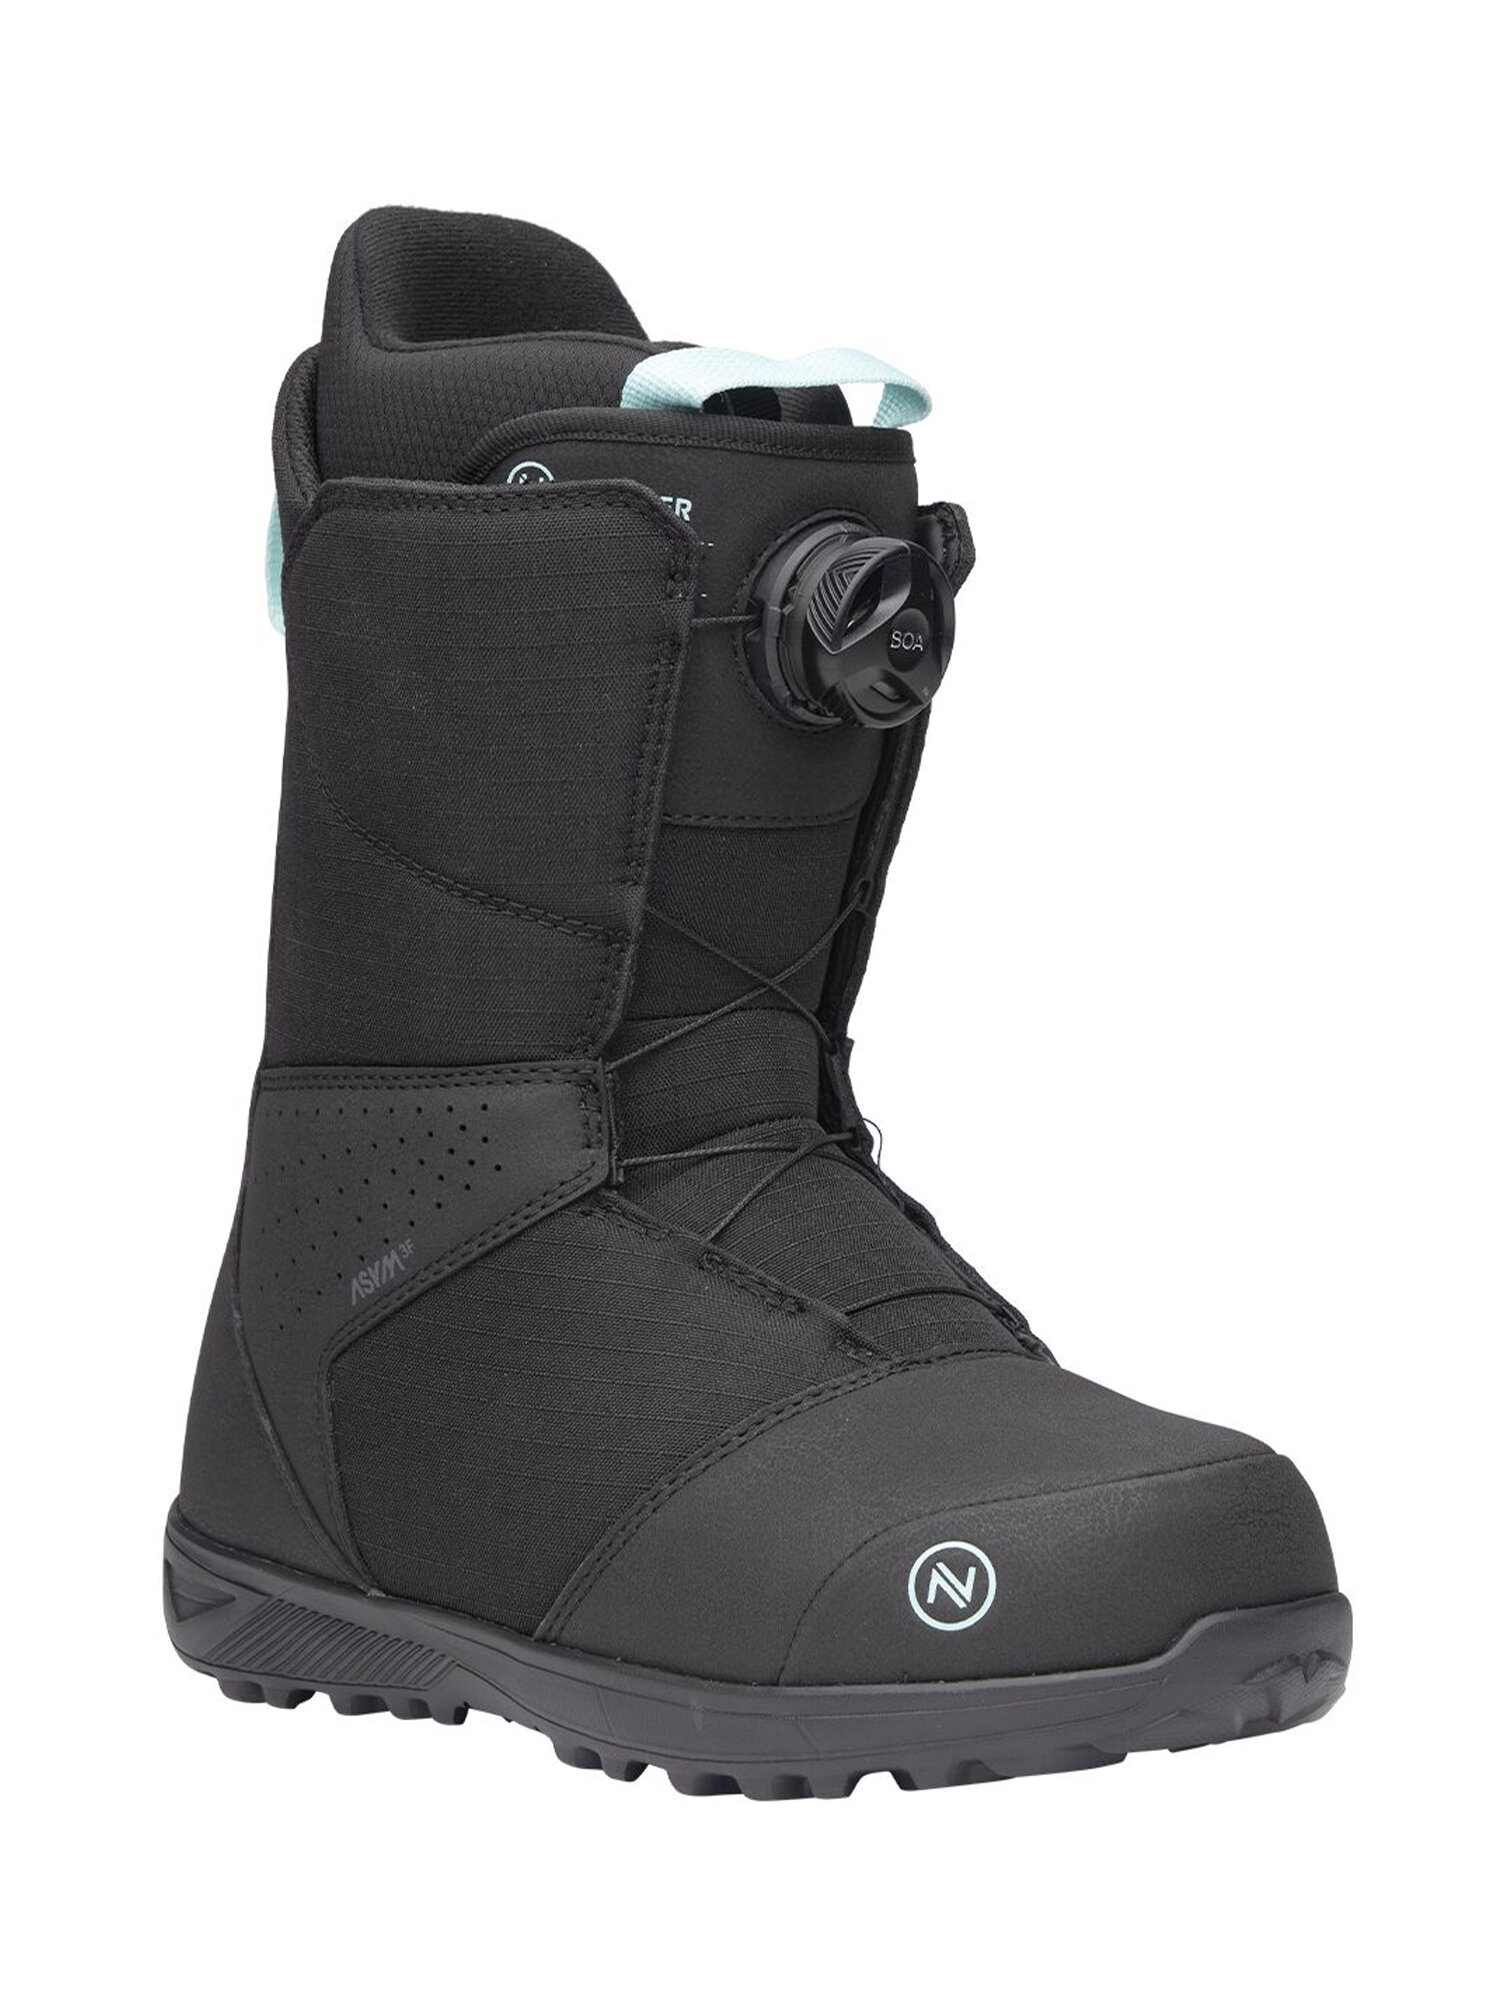 Ботинки для сноуборда NIDECKER Sierra W Black (US:7)